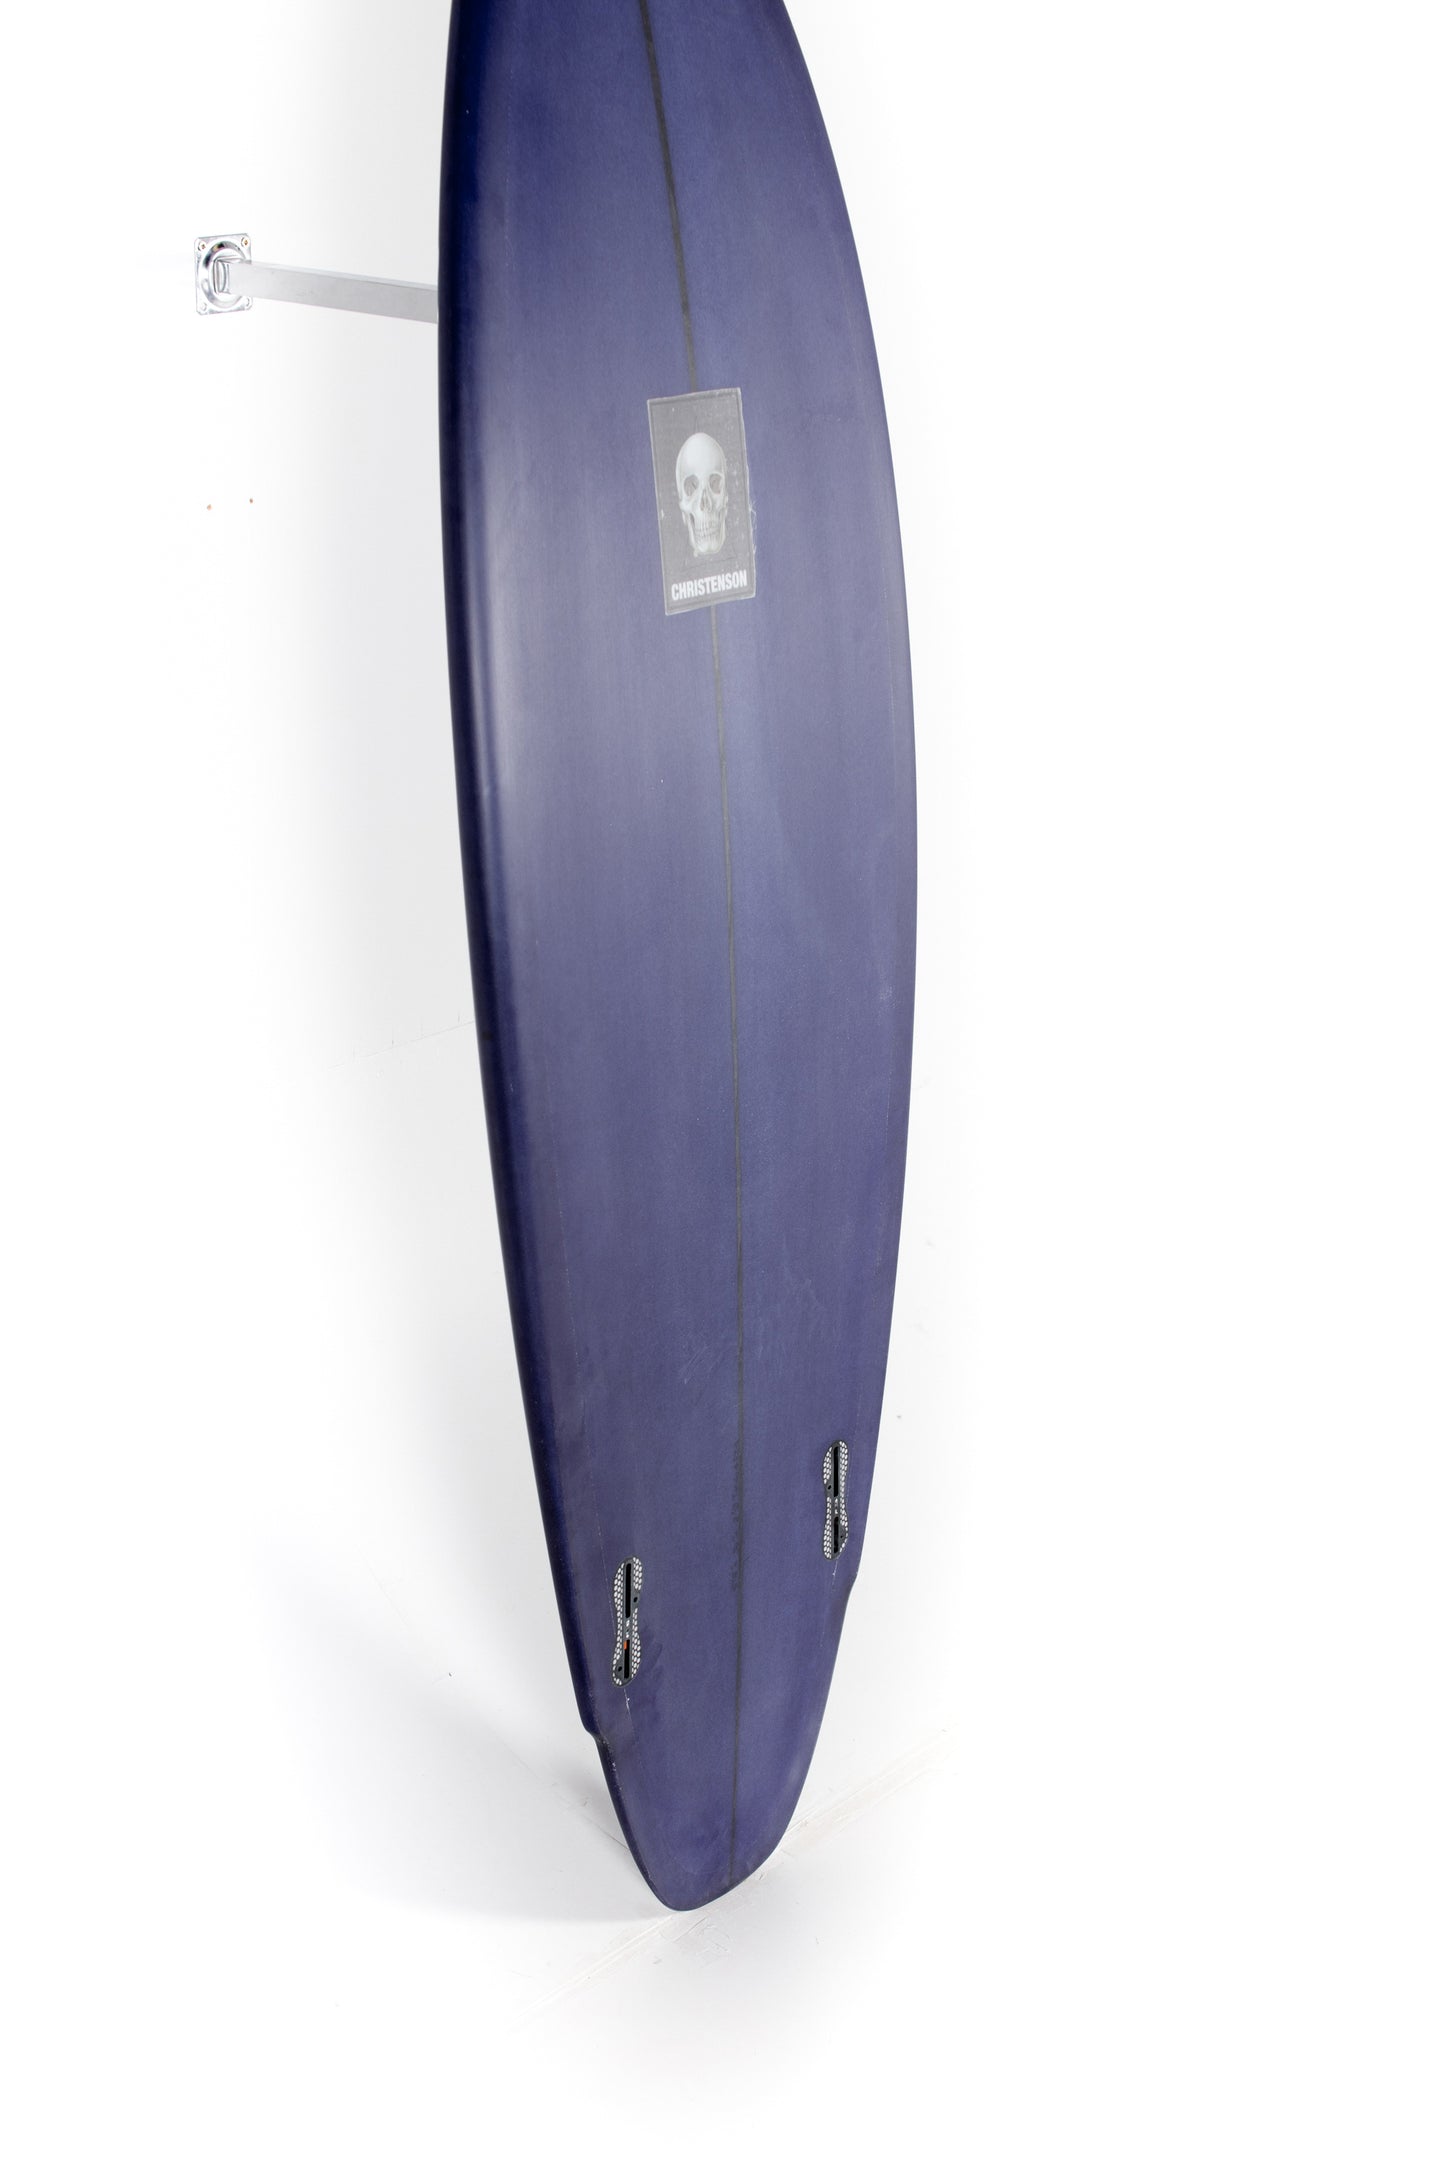 
                  
                    Christenson Surfboards - LANE SPLITTER - 5'8" x 20 x 2 1/2 - CX03723
                  
                